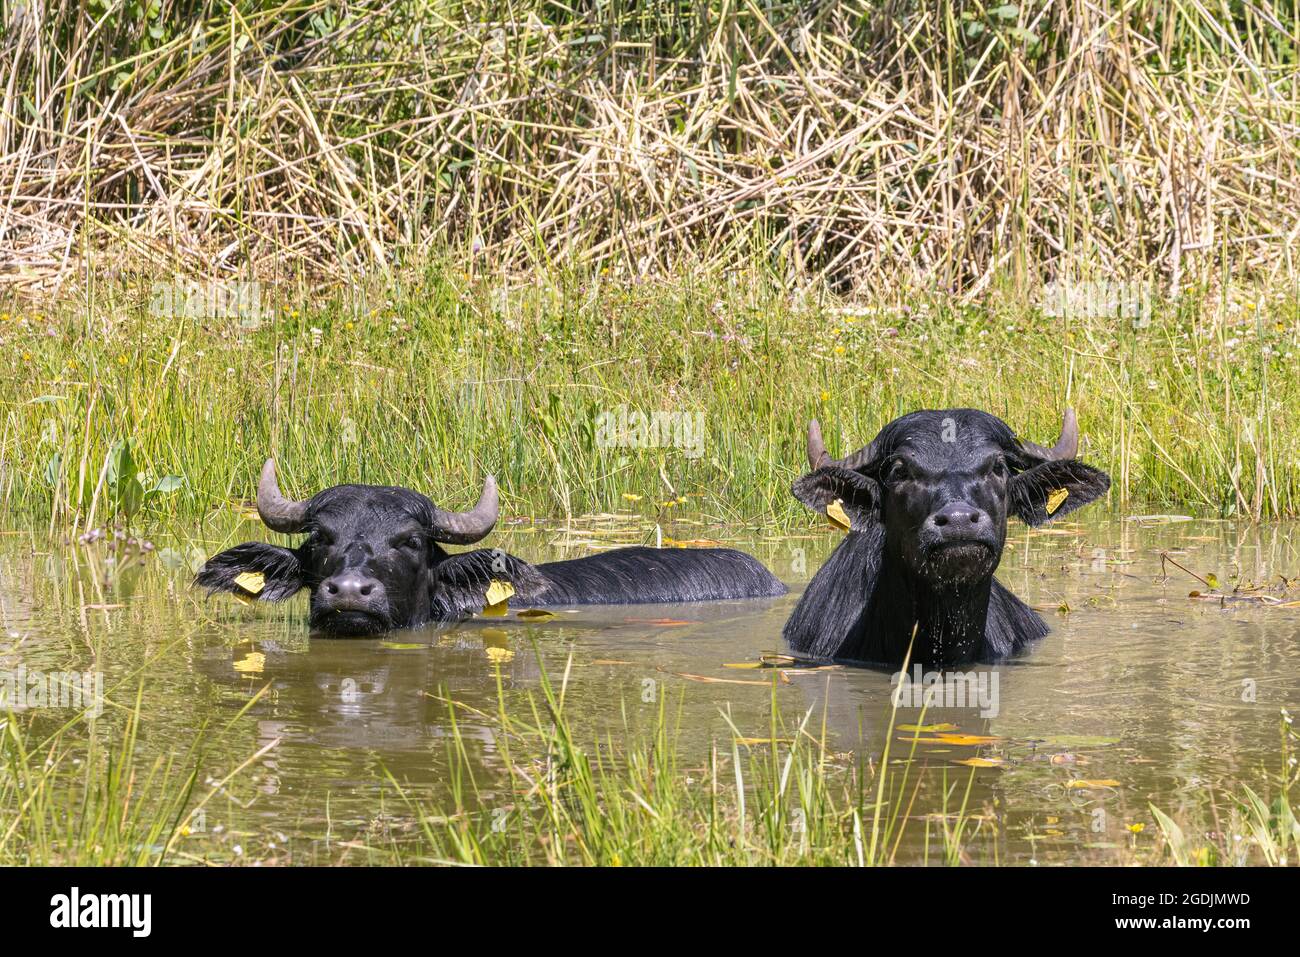 Buffles d'eau asiatiques, anoas (Bubalus spec.), deux buffles d'eau asiatiques se baignant dans un étang, Allemagne Banque D'Images